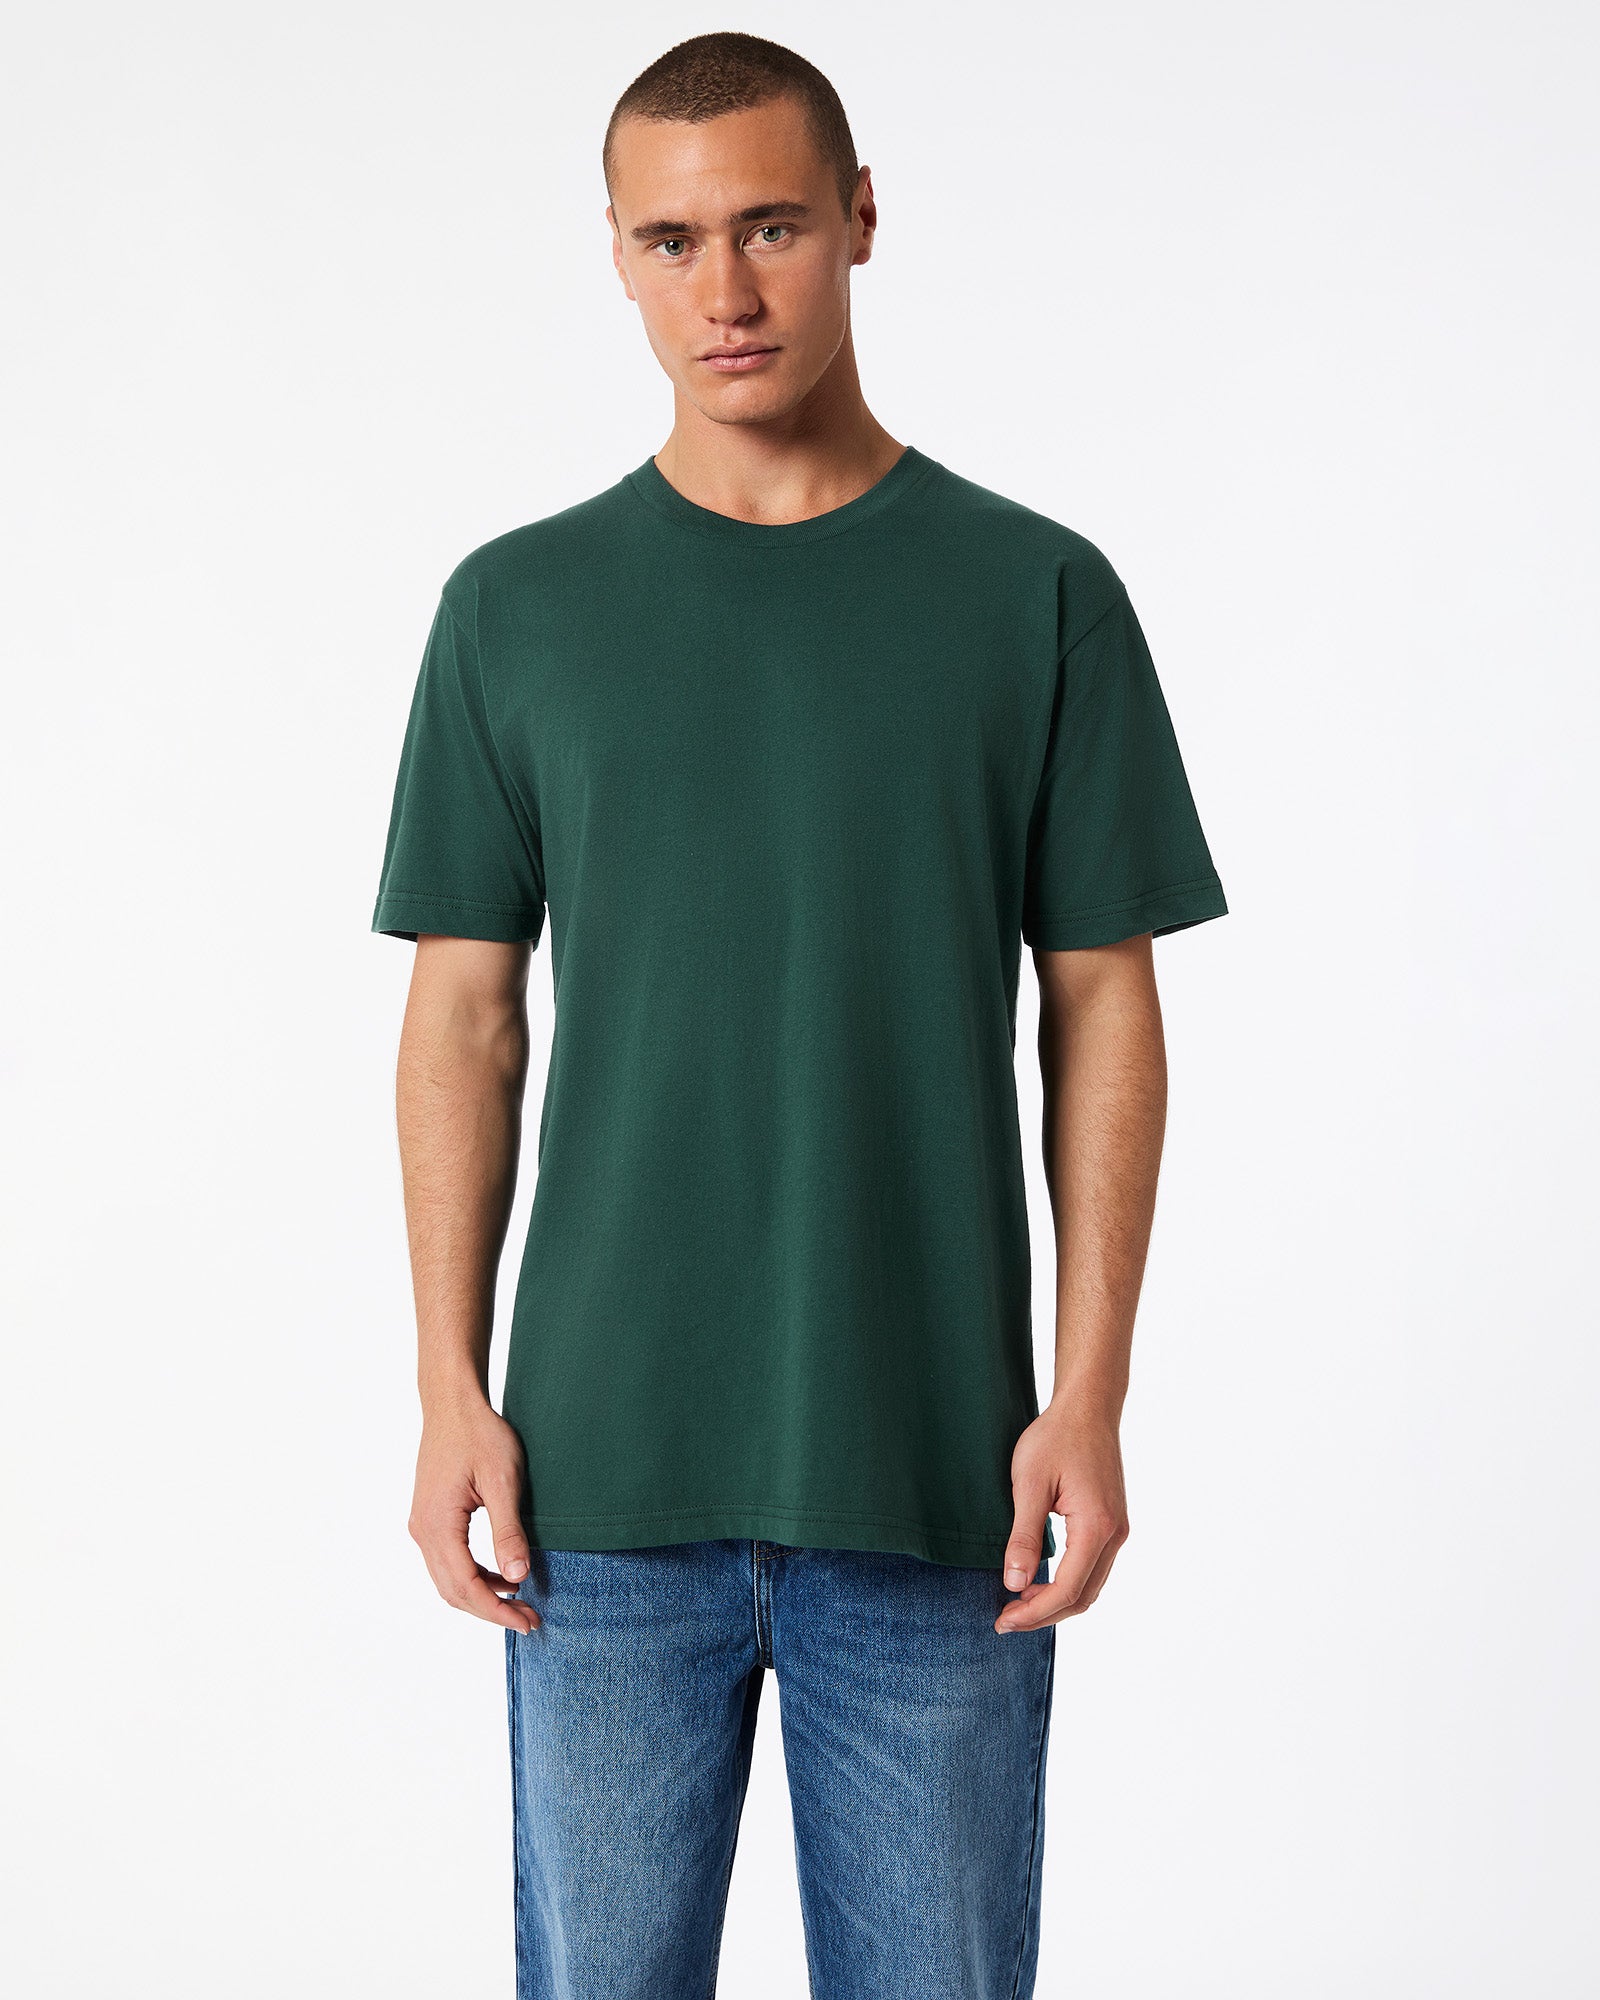 Fine Jersey Unisex Short Sleeve T-Shirt - Forest